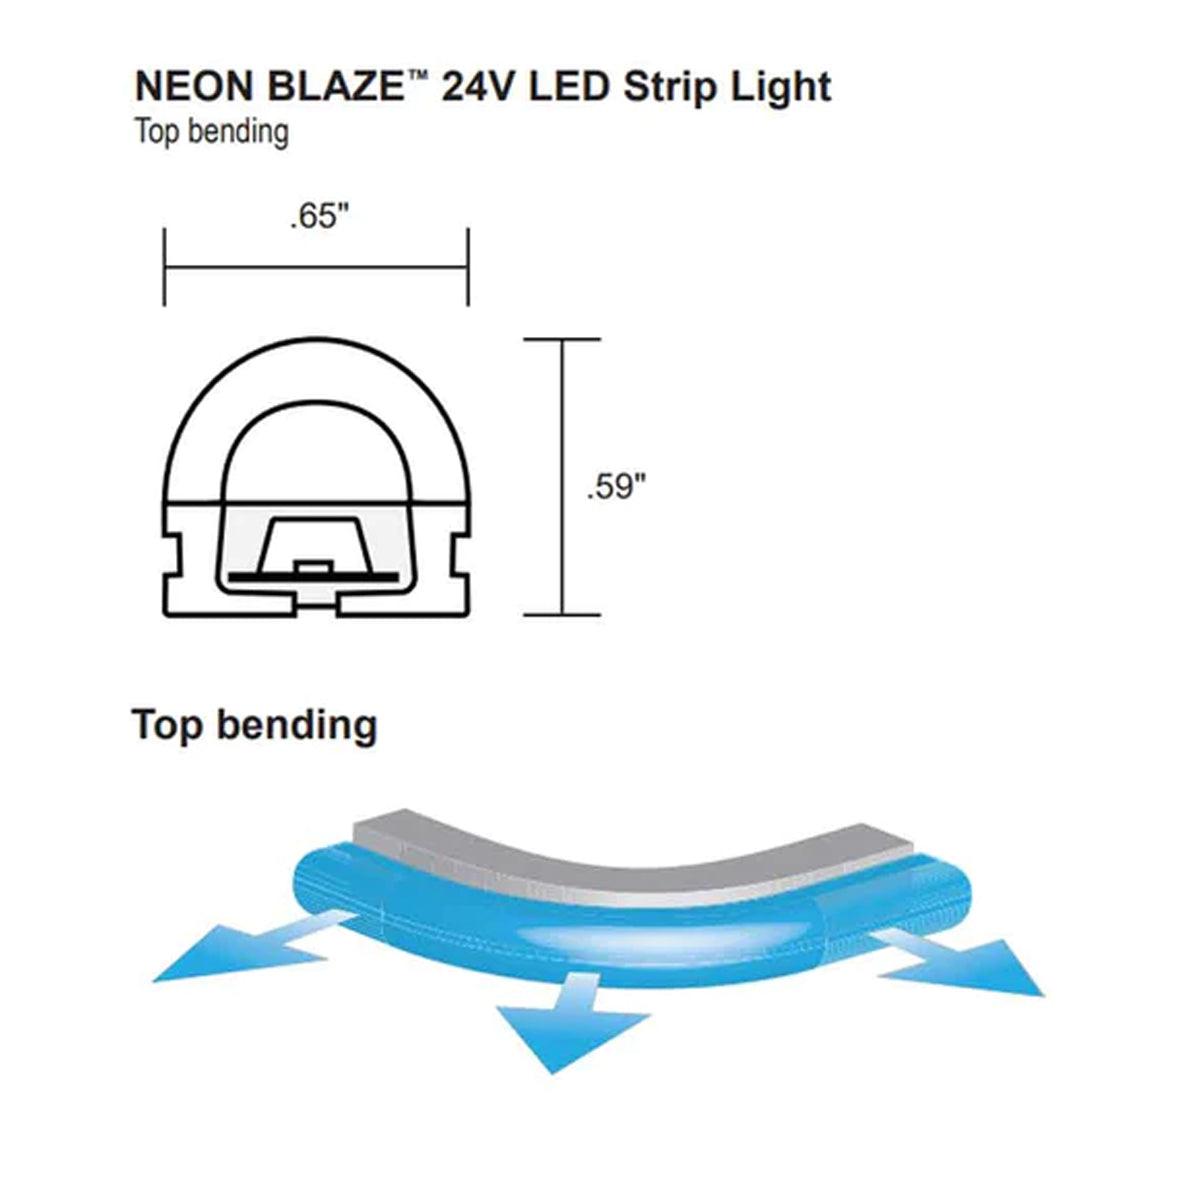 Neon BLAZE LED Neon Strip Light, Gold, 24V, Top Bending